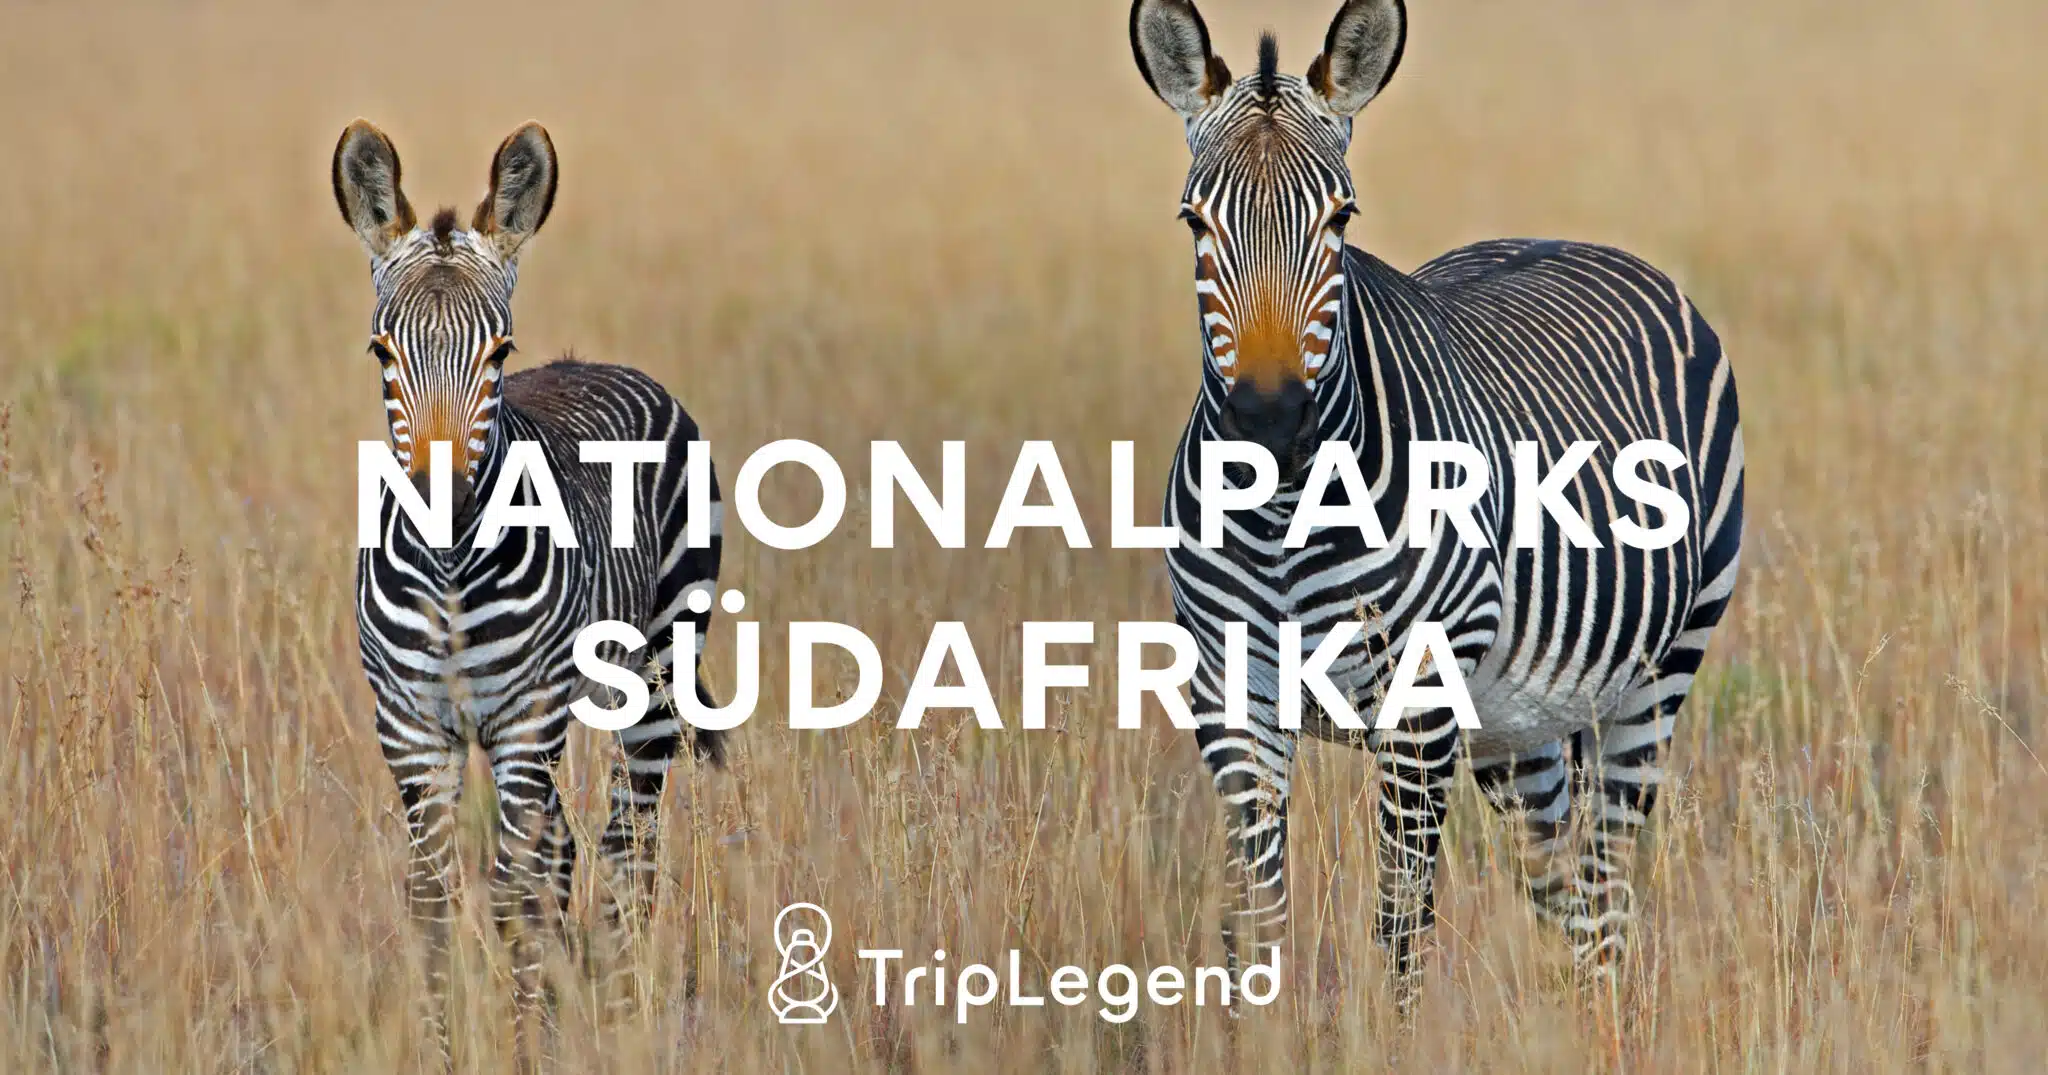 Nationalparks Suedafrika Scaled.jpg